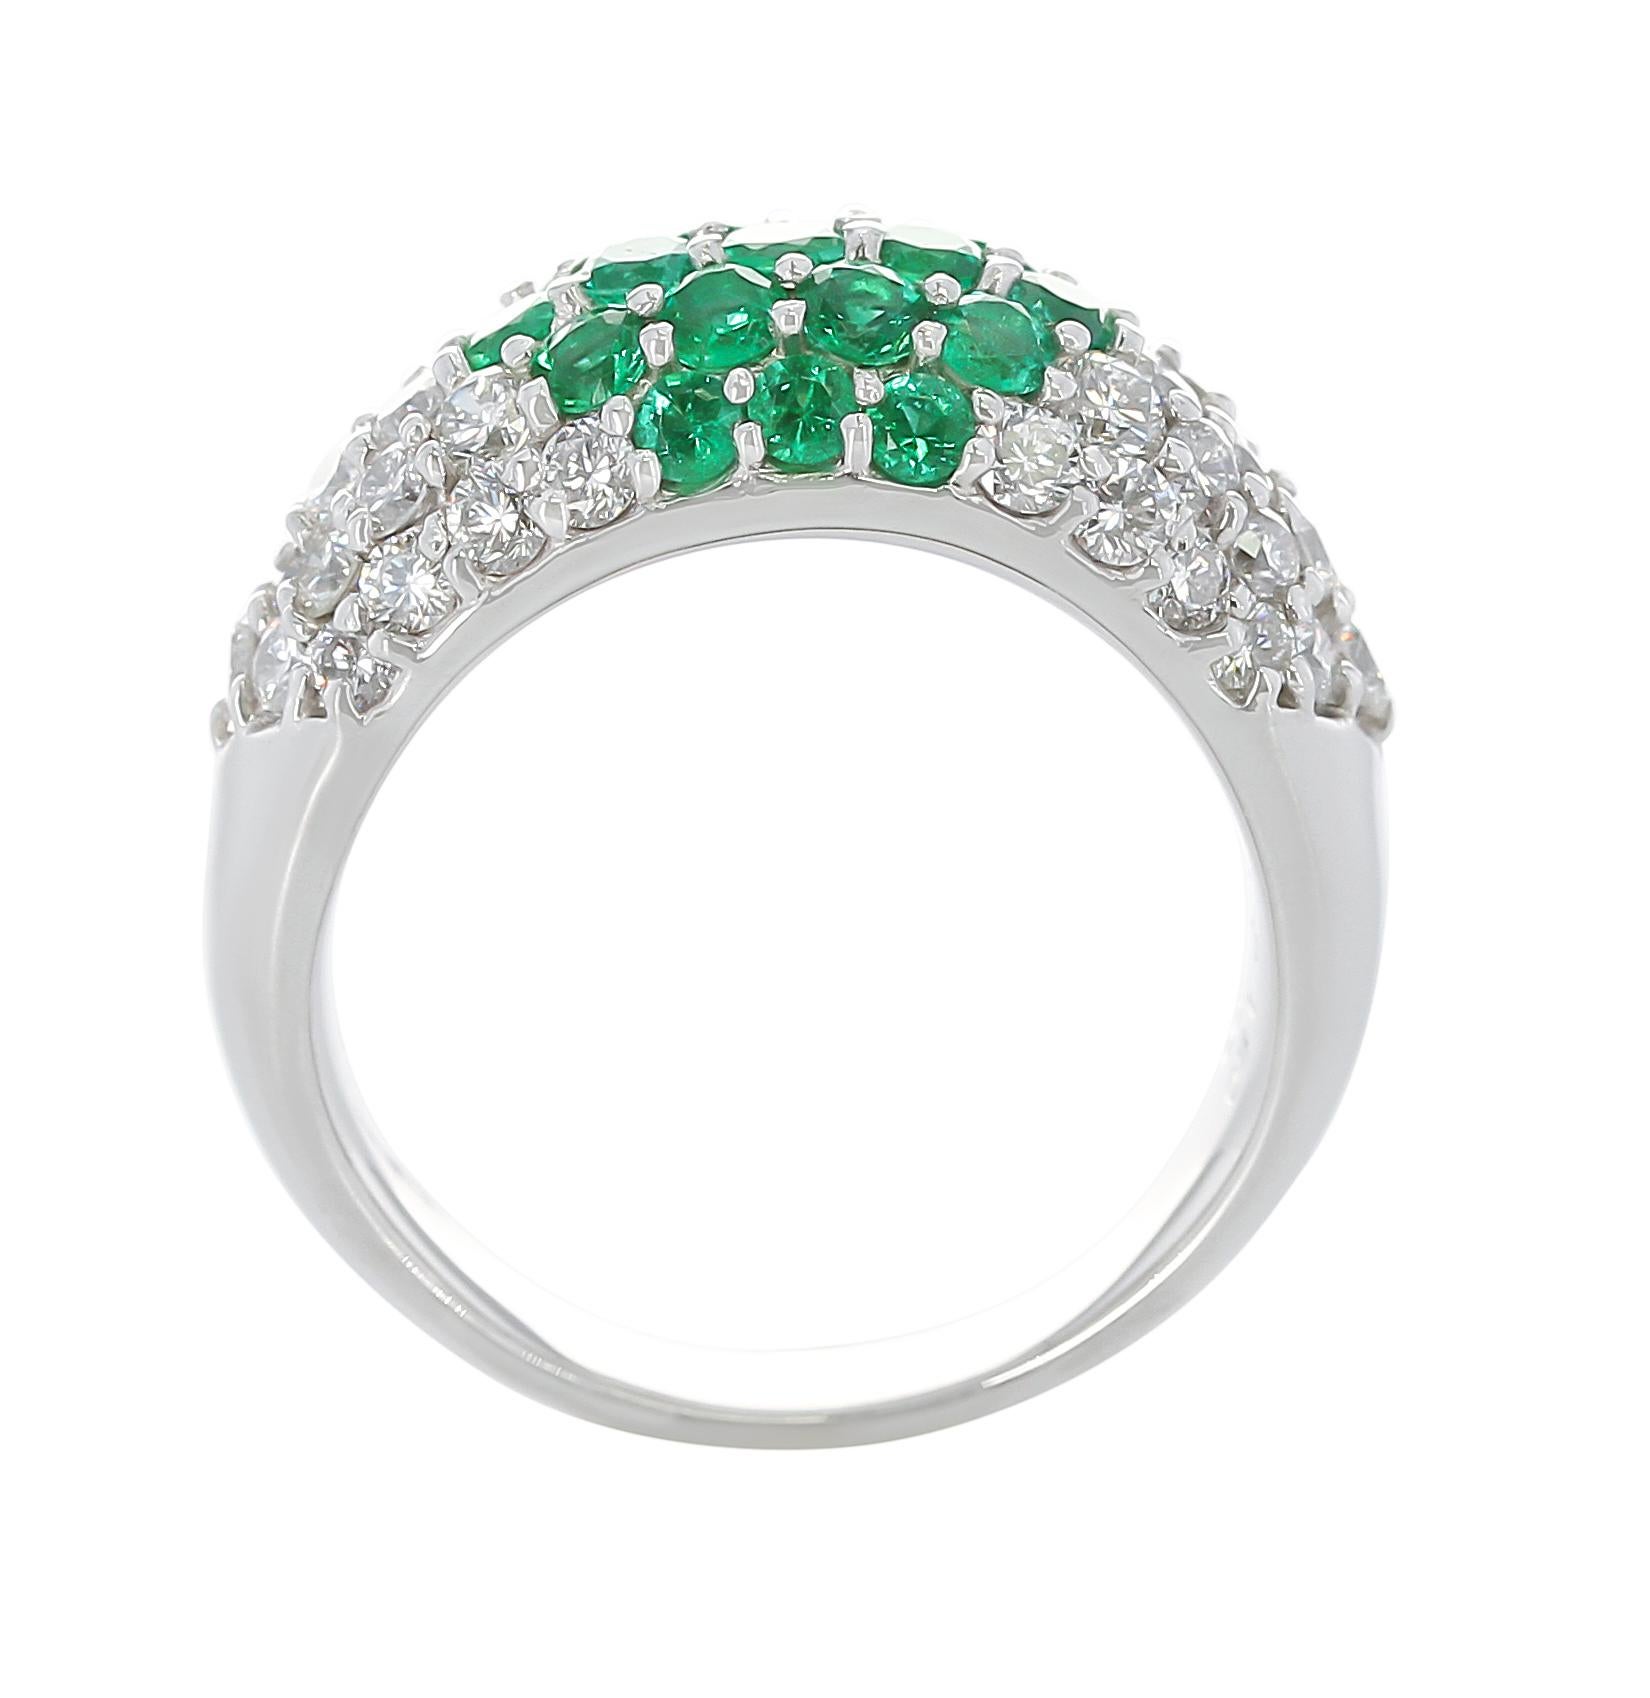 Ein Smaragd- und Diamantring aus Platin mit 1,50 Karat Diamanten und 1 Karat Smaragden. Gesamtgewicht: 13,66 Gramm, Ringgröße US 7,25. 